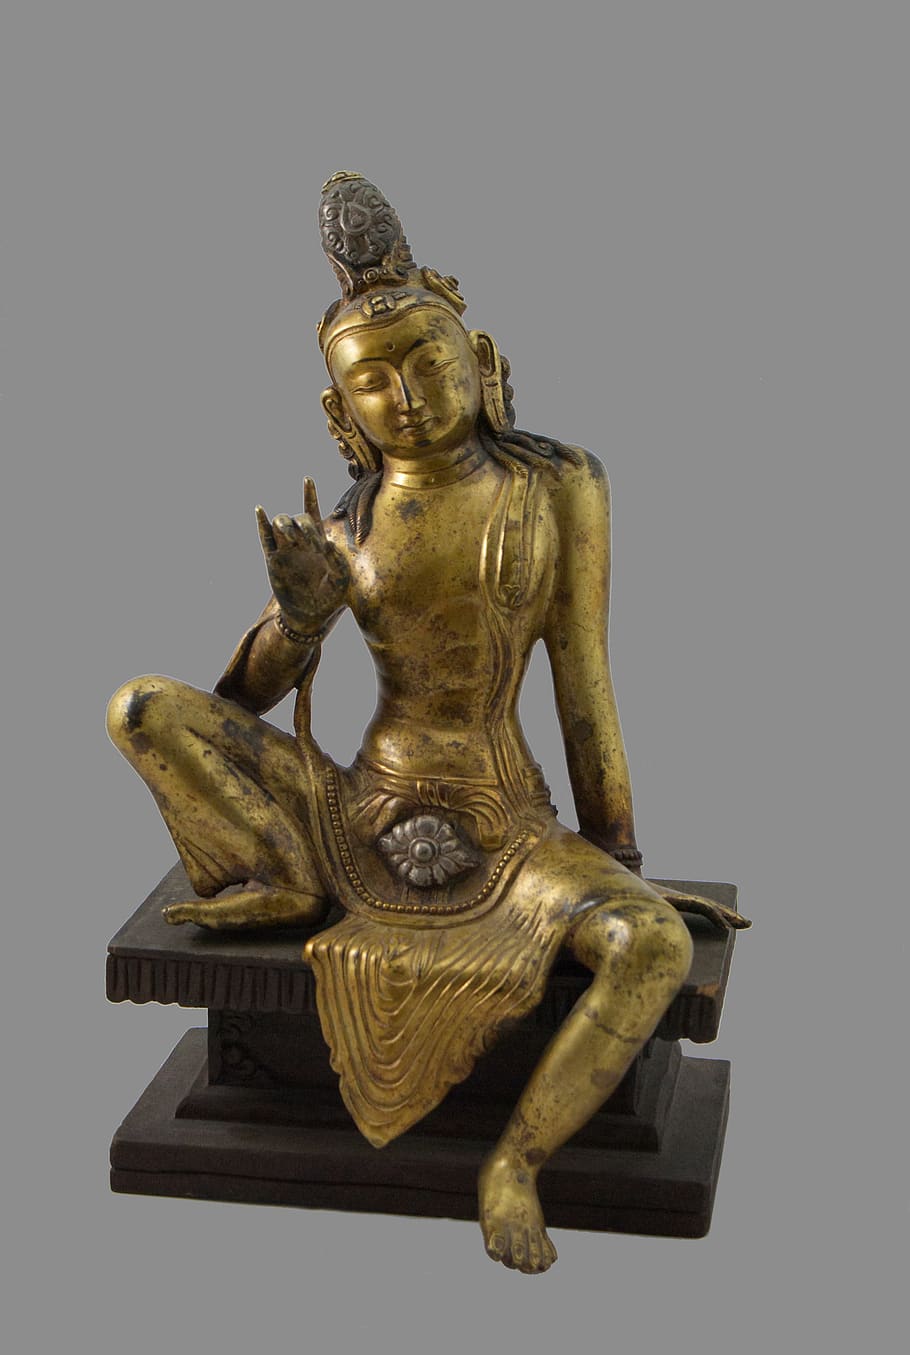 buddha, dispel evil, meditation, sculpture, representation, art and craft, statue, studio shot, indoors, gold colored